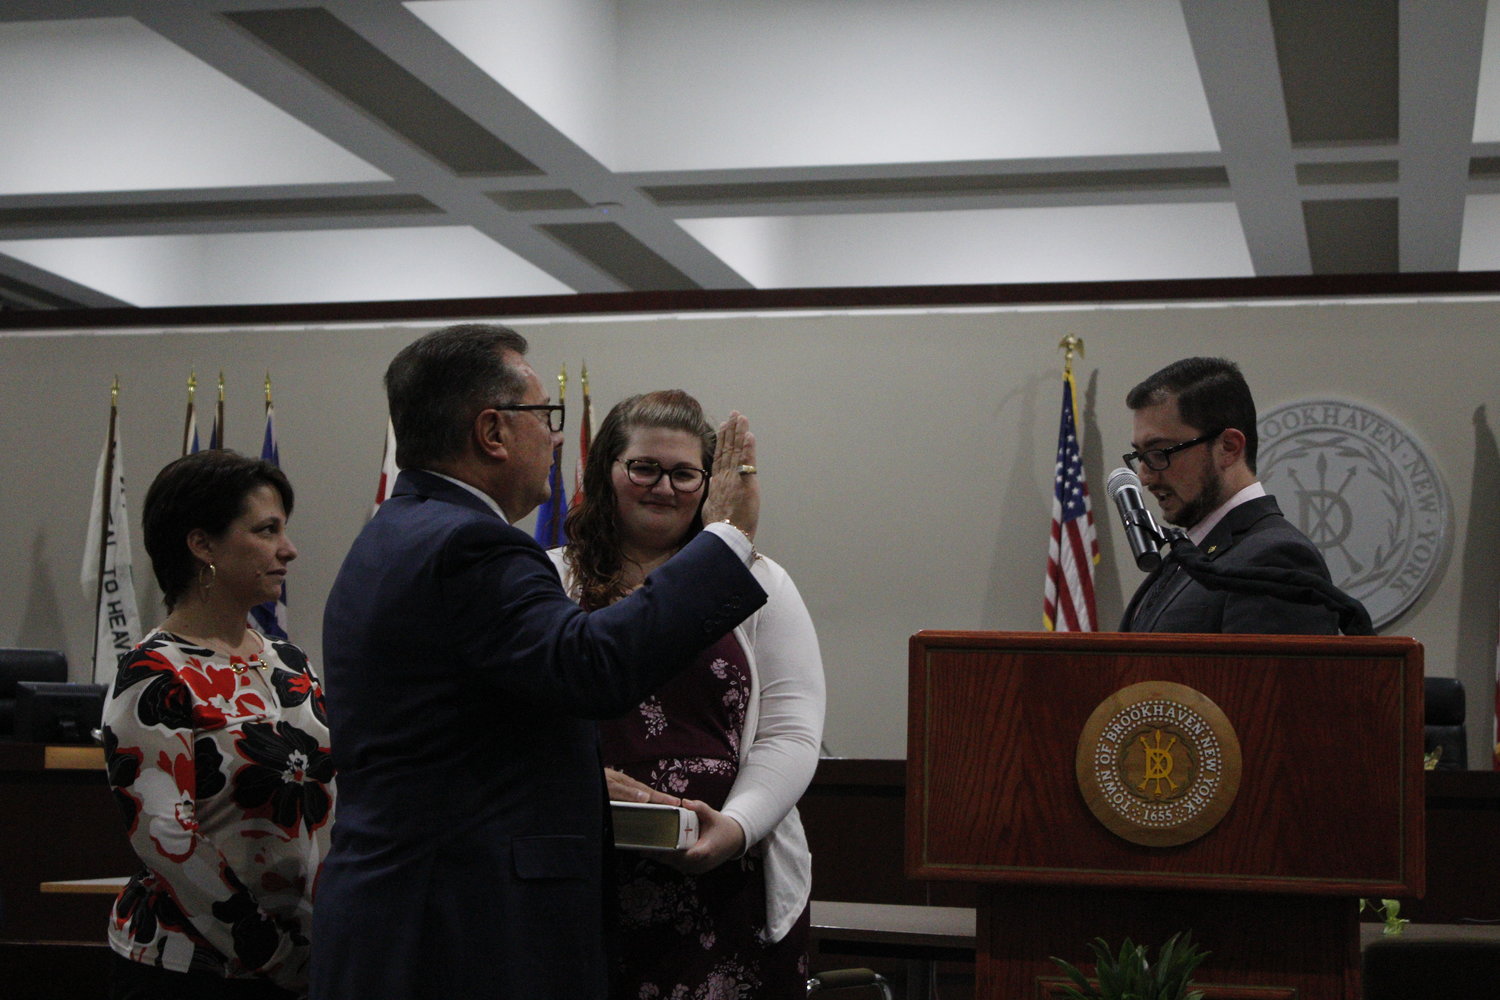 Councilman Mike Loguercio is sworn in by his son, Devin Michael Loguercio.